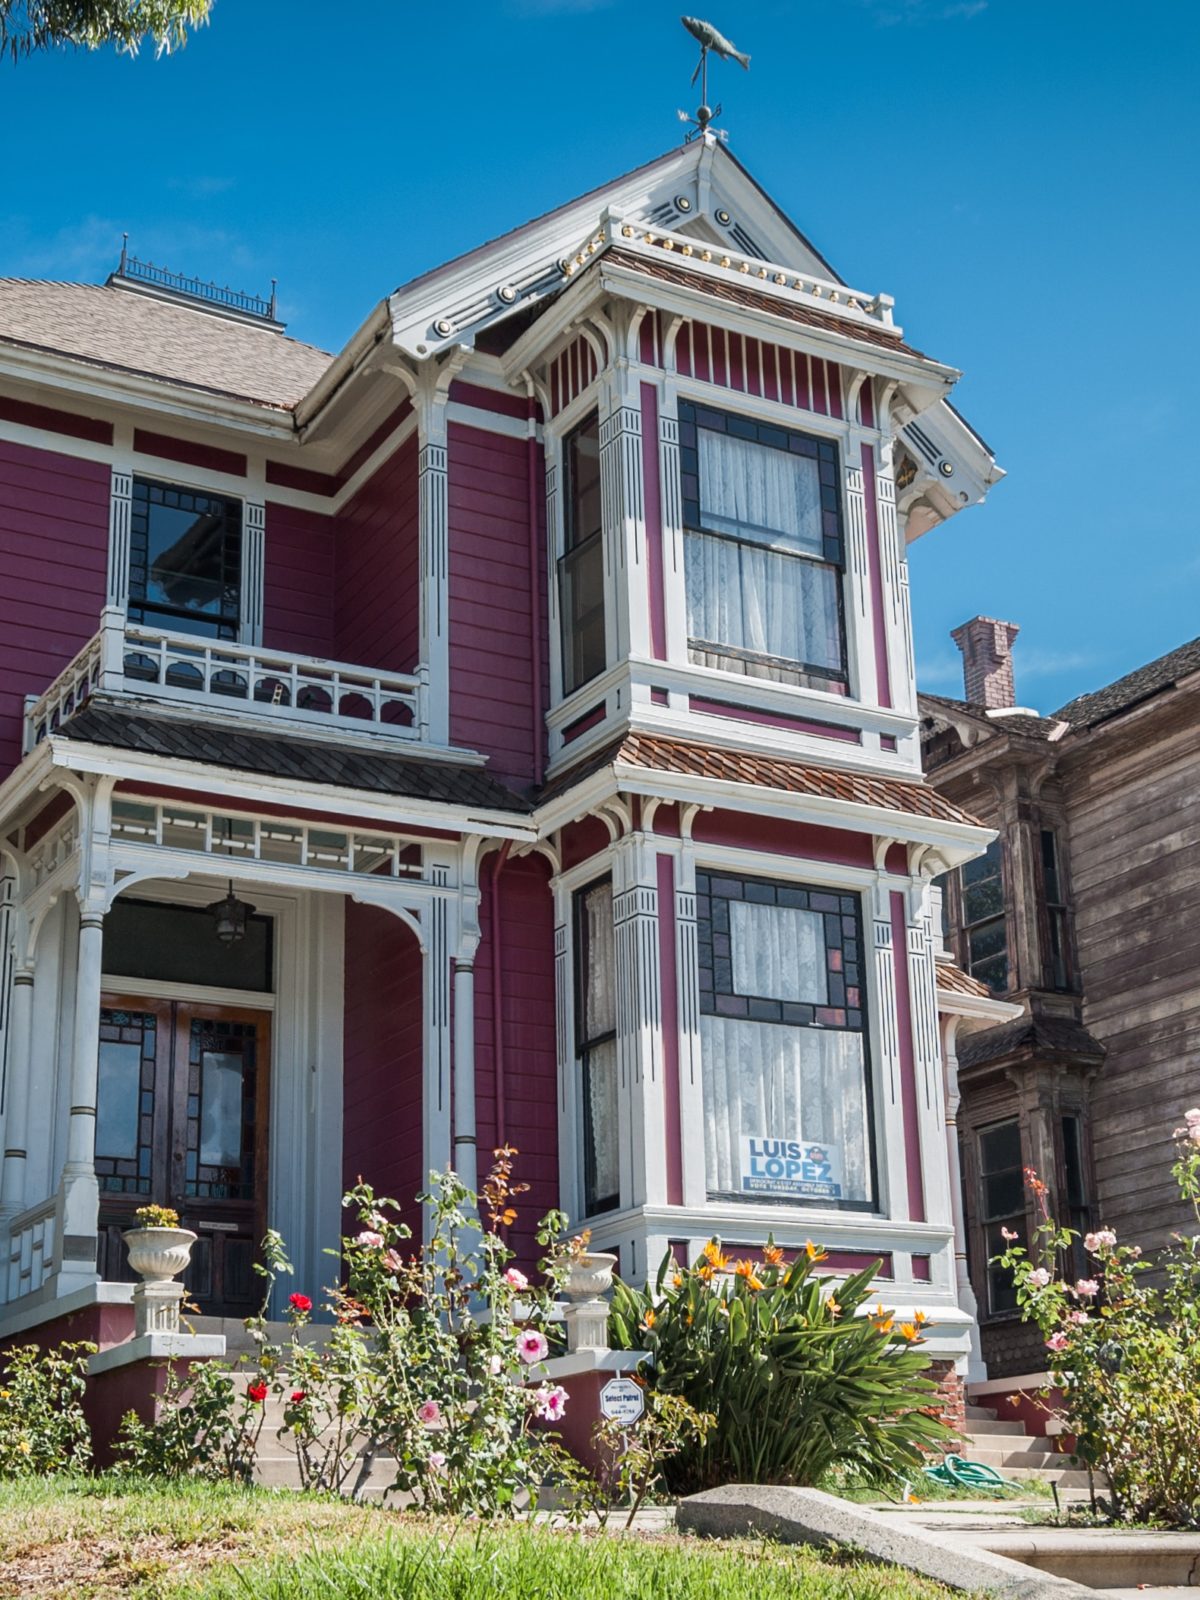 Charmed - Maison située Los Angeles (San Francisco dans la série)